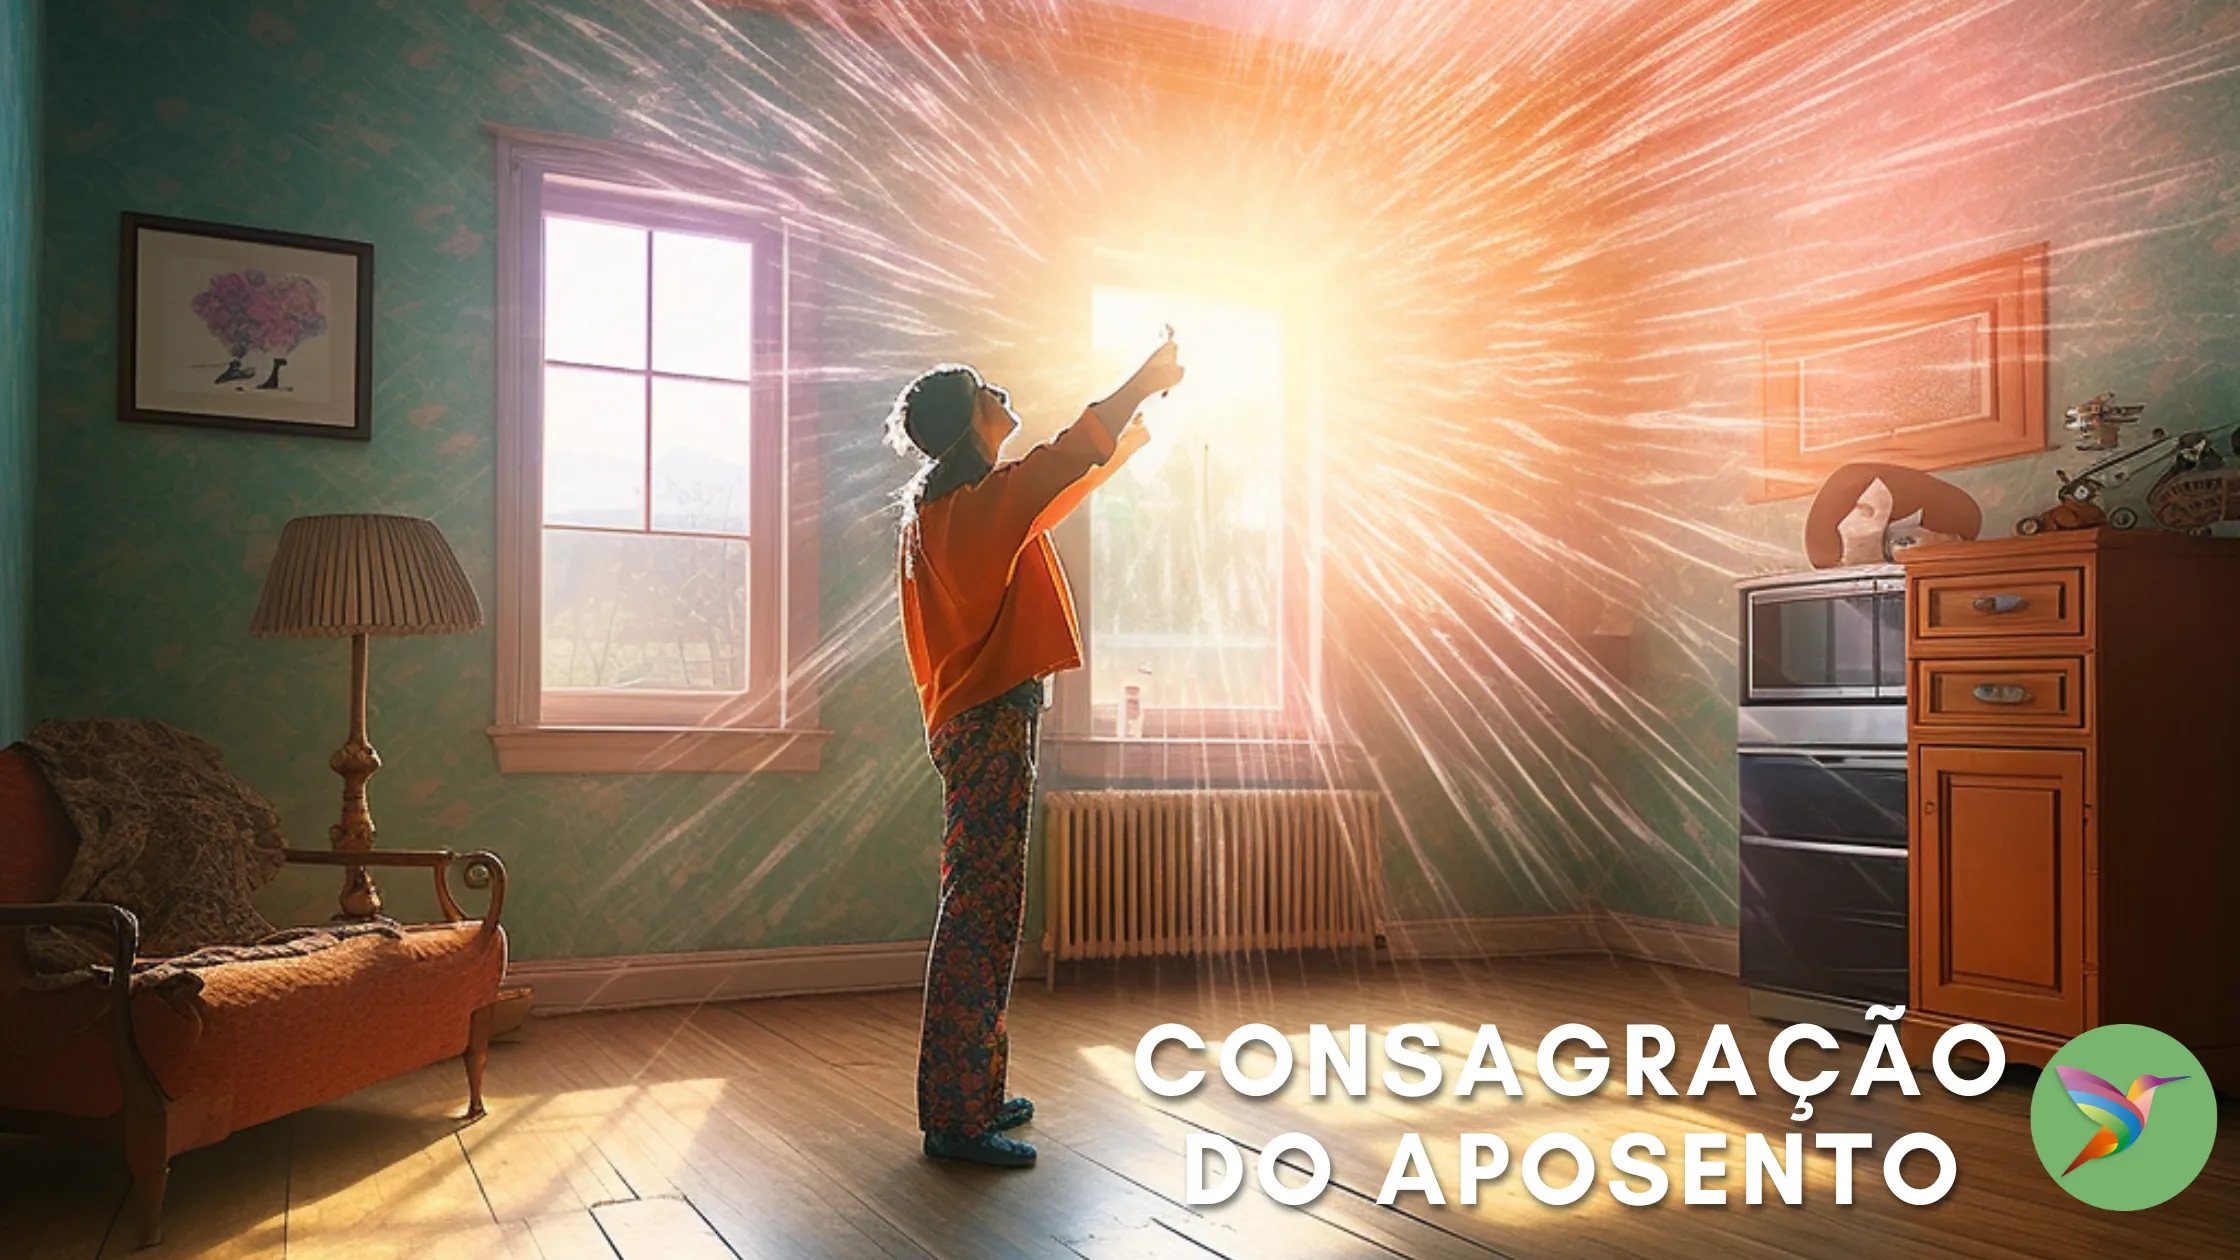 Featured image for “Consagração do Aposento – Oração de Limpeza”